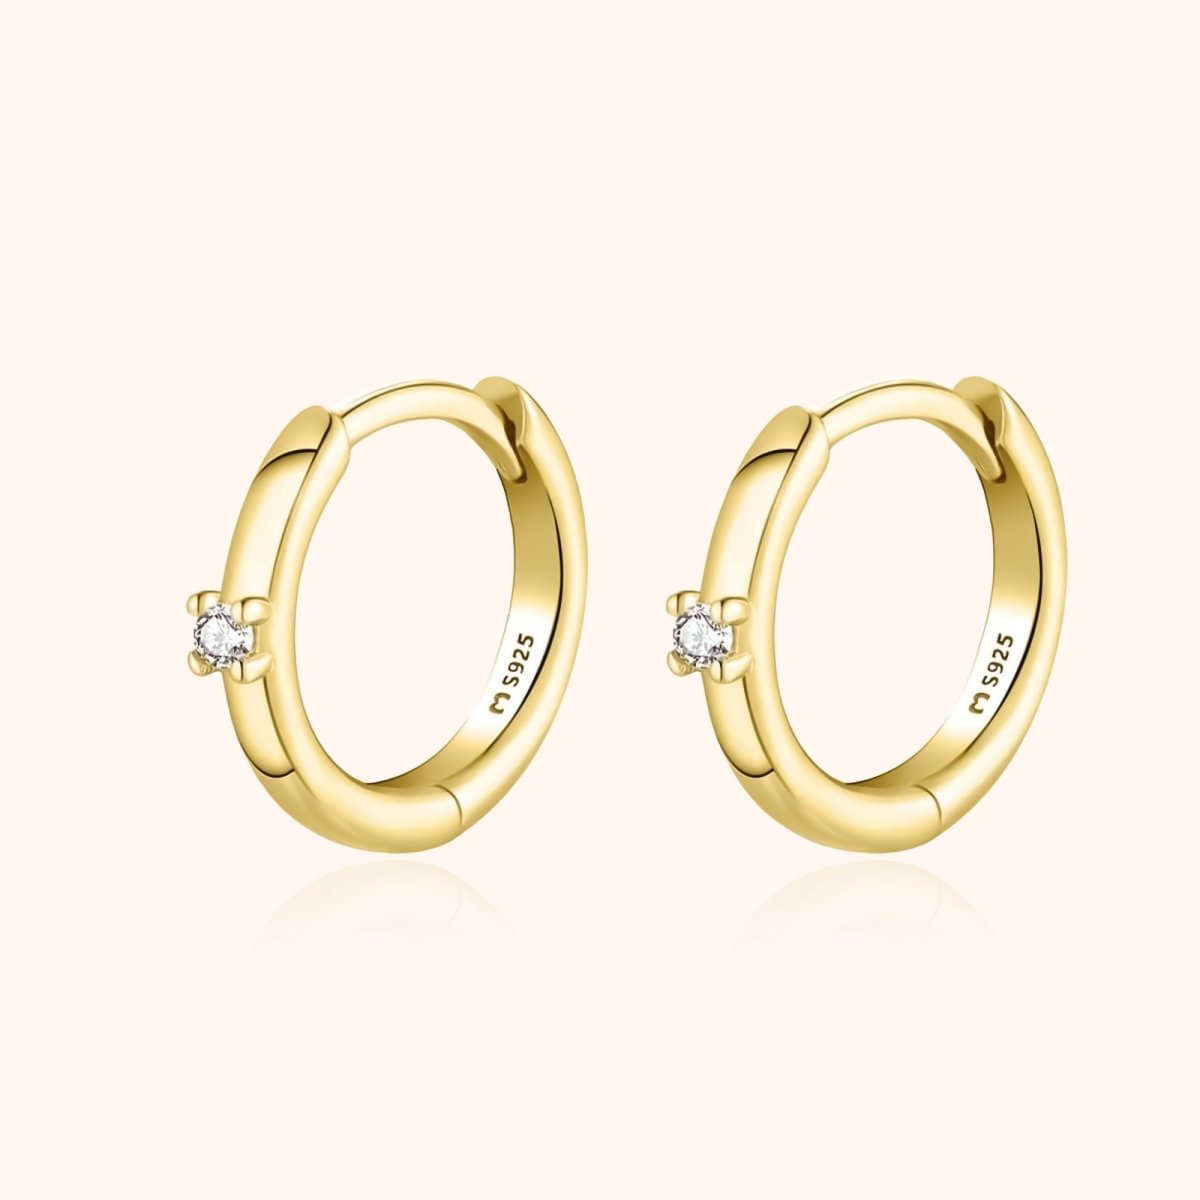 "Elegantti" Earrings - Milas Jewels Shop